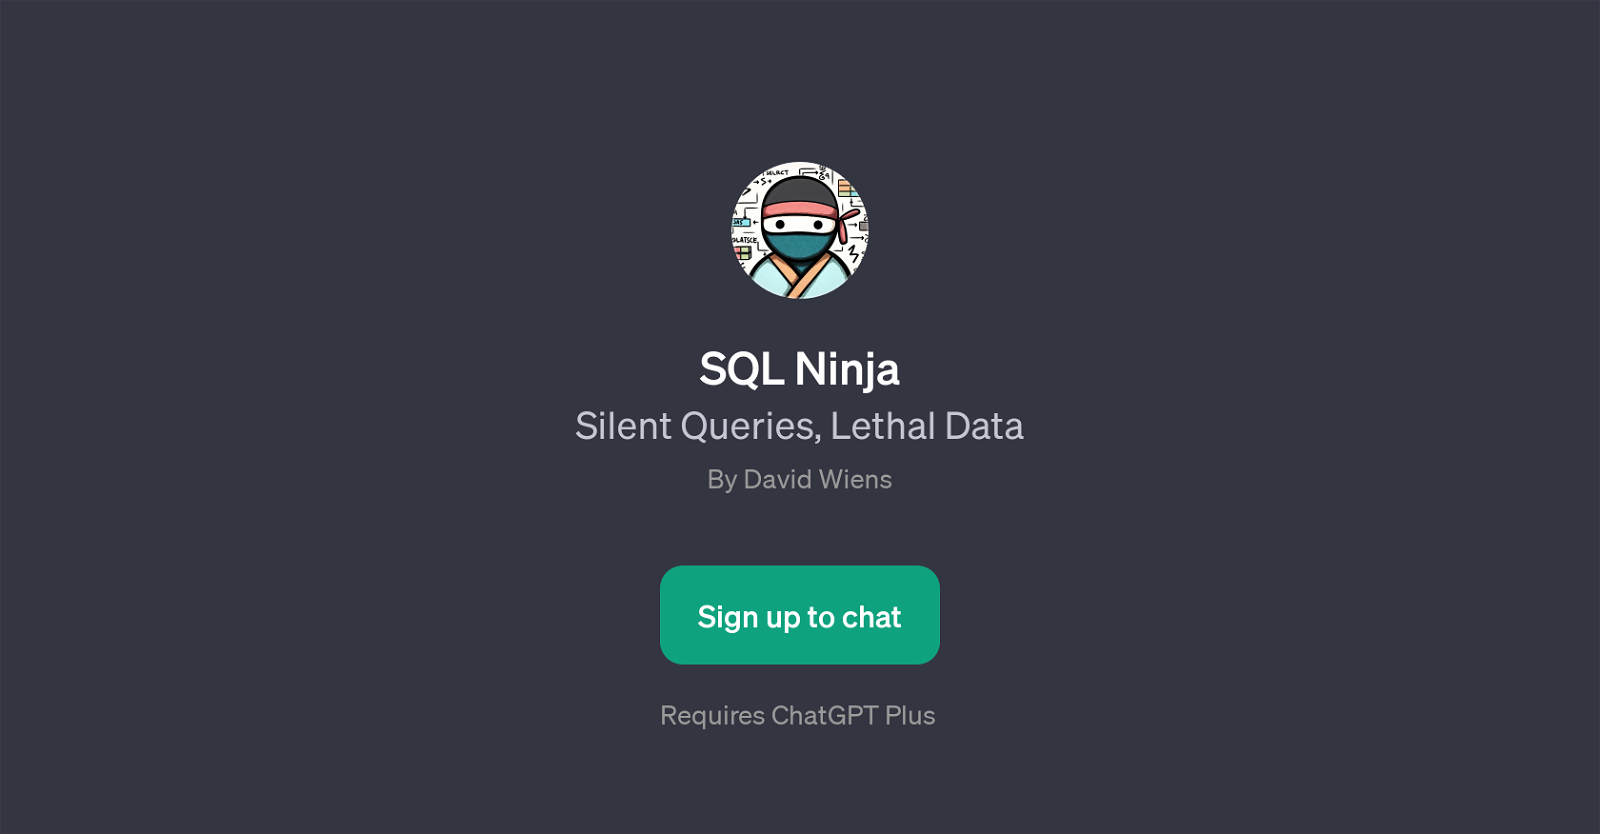 SQL Ninja website